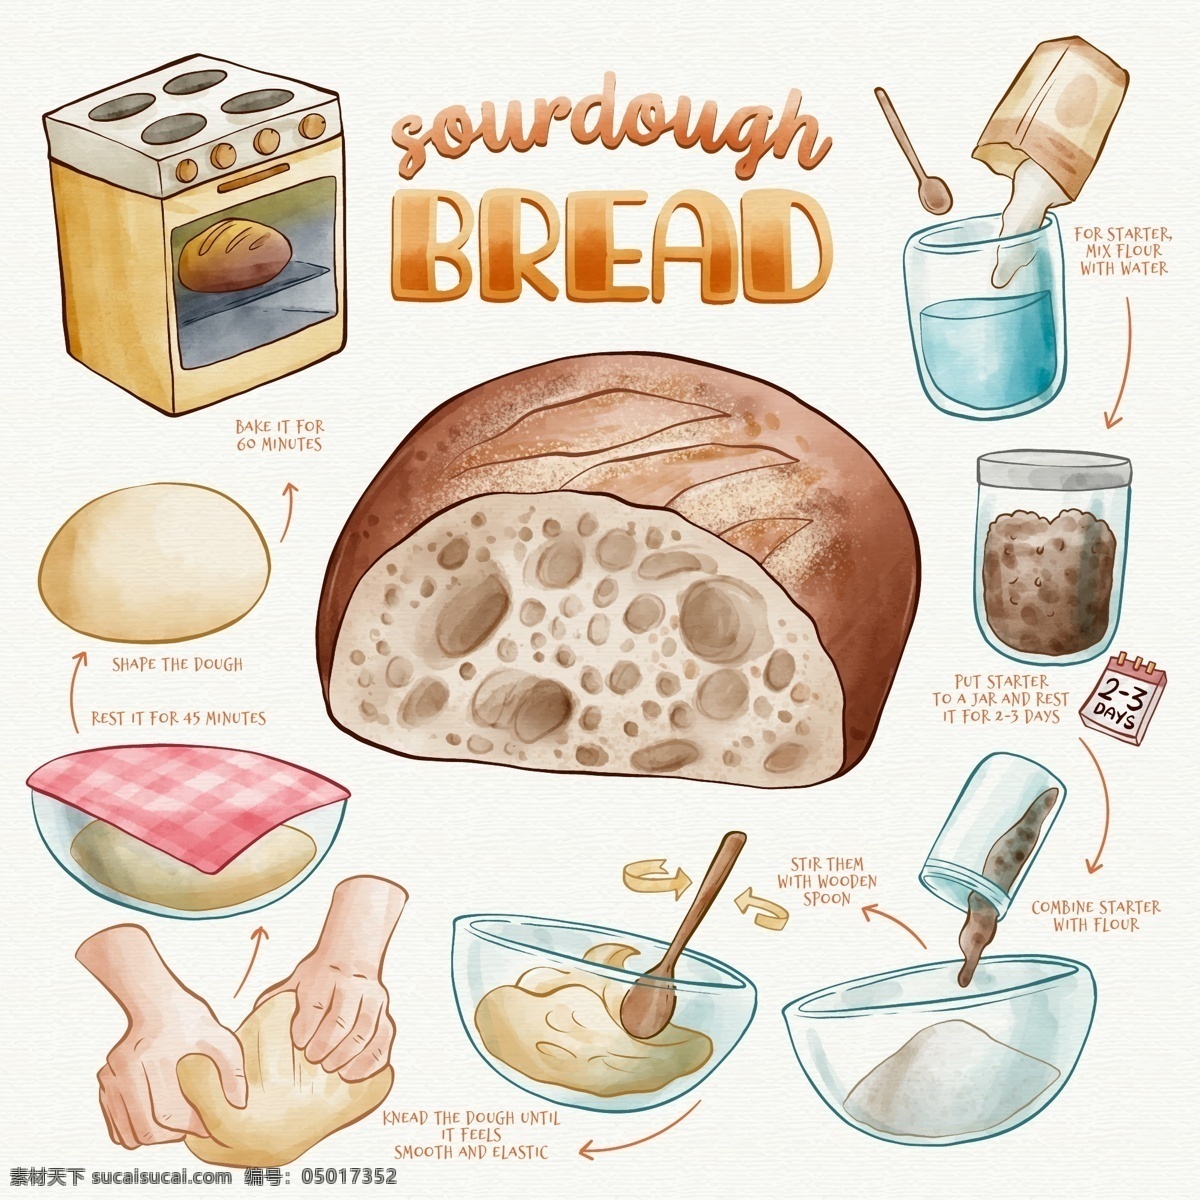 健康饮食 矢量 手绘 元素 面包 烤箱 制作步骤 酵母 面粉 制作 步骤